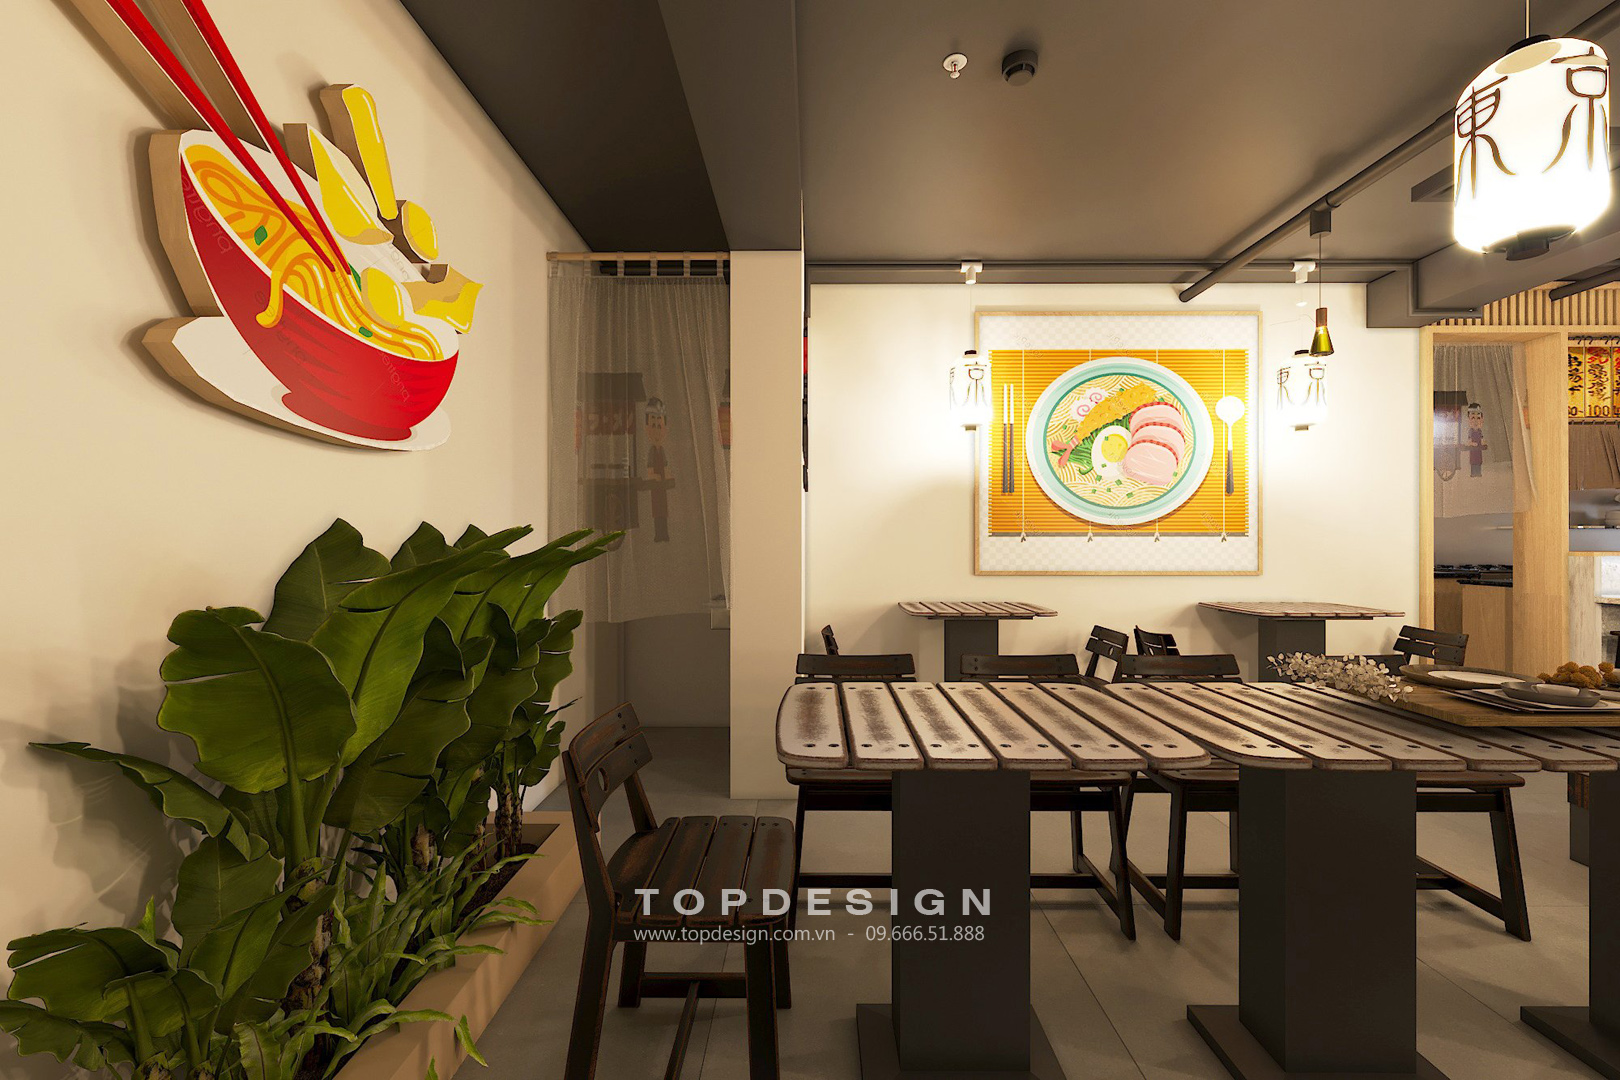 TOPDESIGN_Nhà hàng Nhật Bản_Mỳ Ramen_11